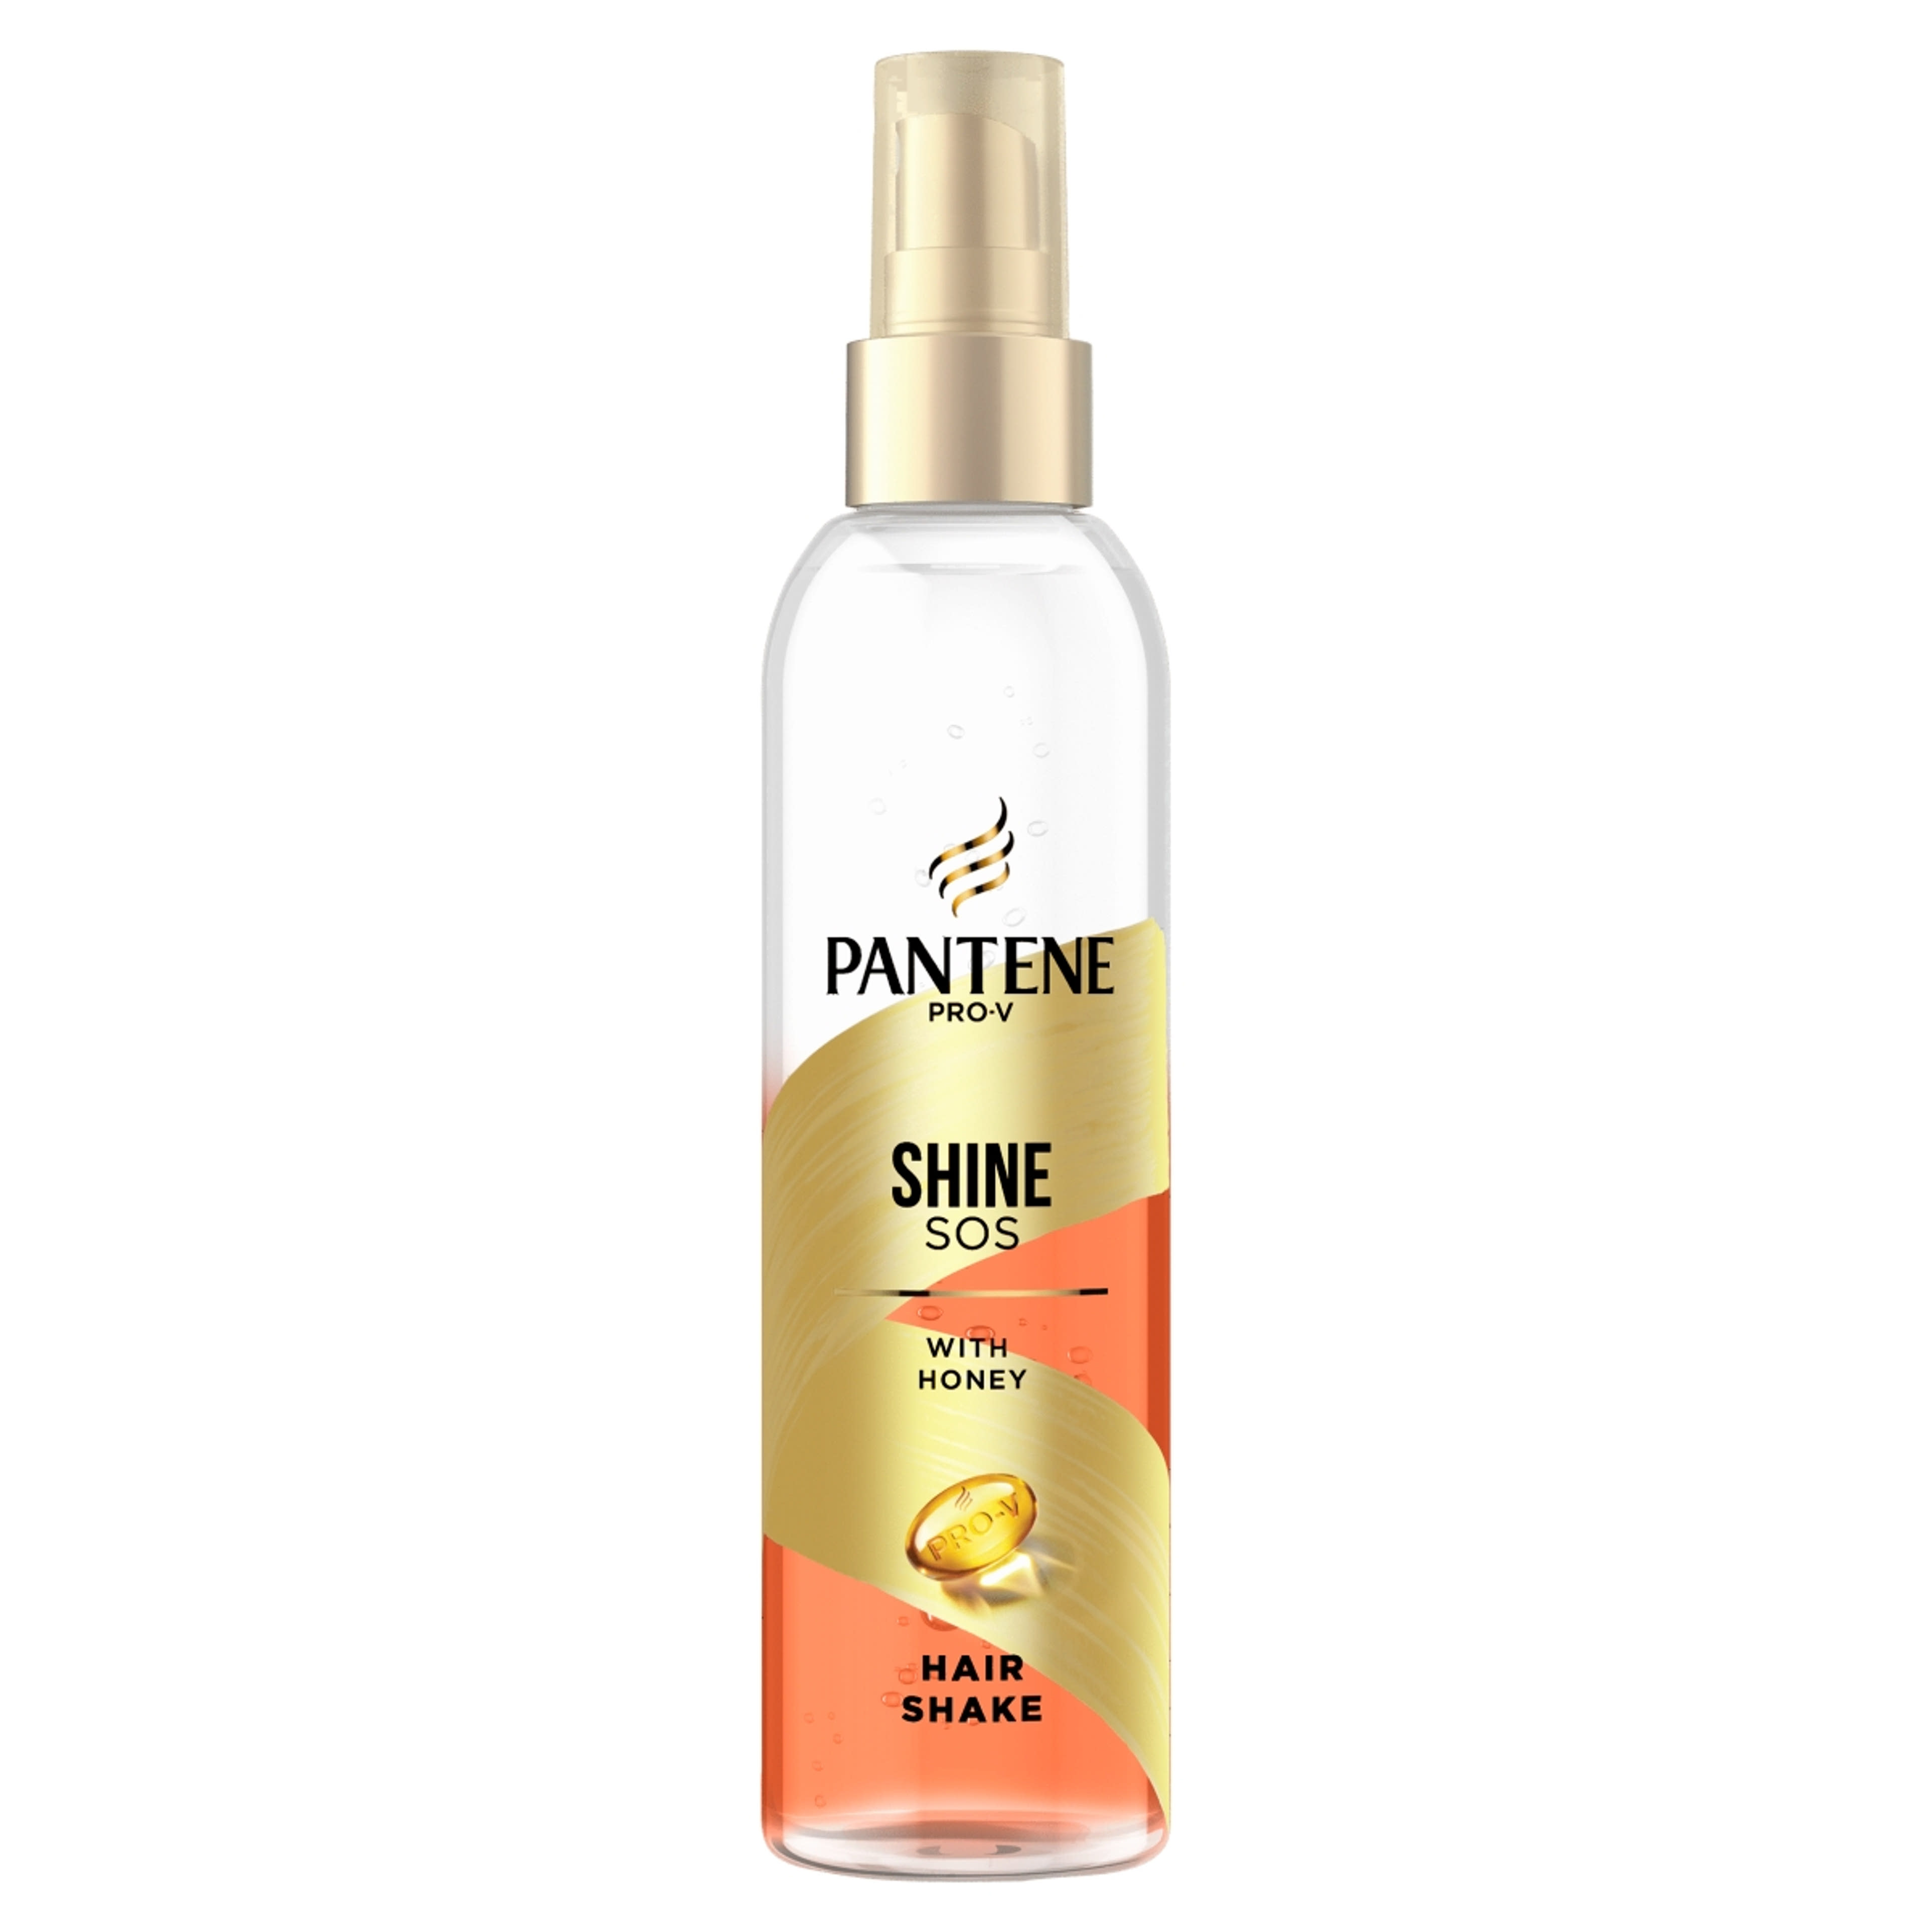 Pantene hair rescue shaker repair - 150 ml-1